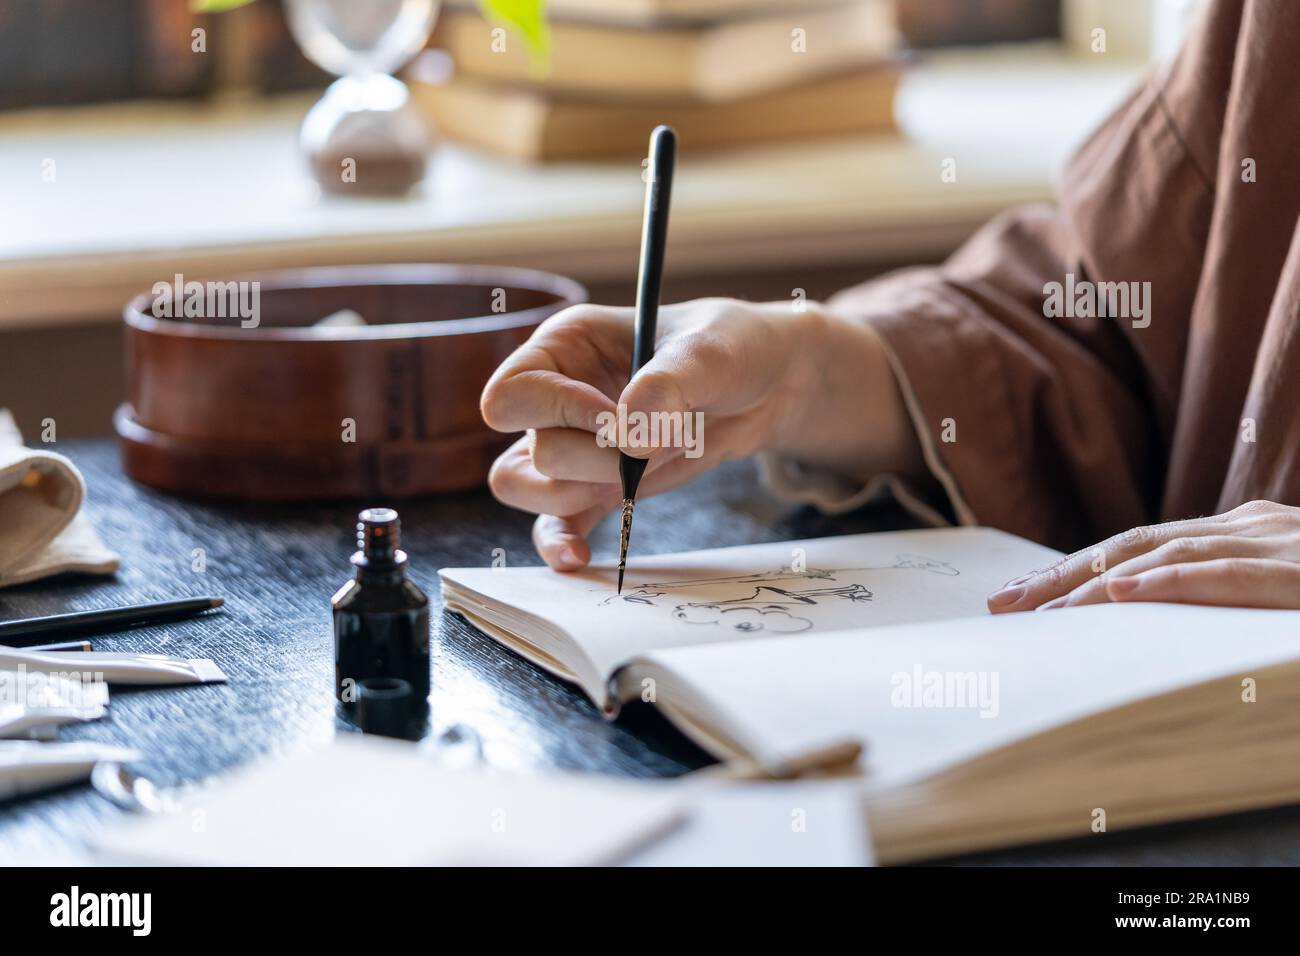 Artiste utilisant le dessin au stylo dans un carnet d'esquisses à l'encre noire Banque D'Images